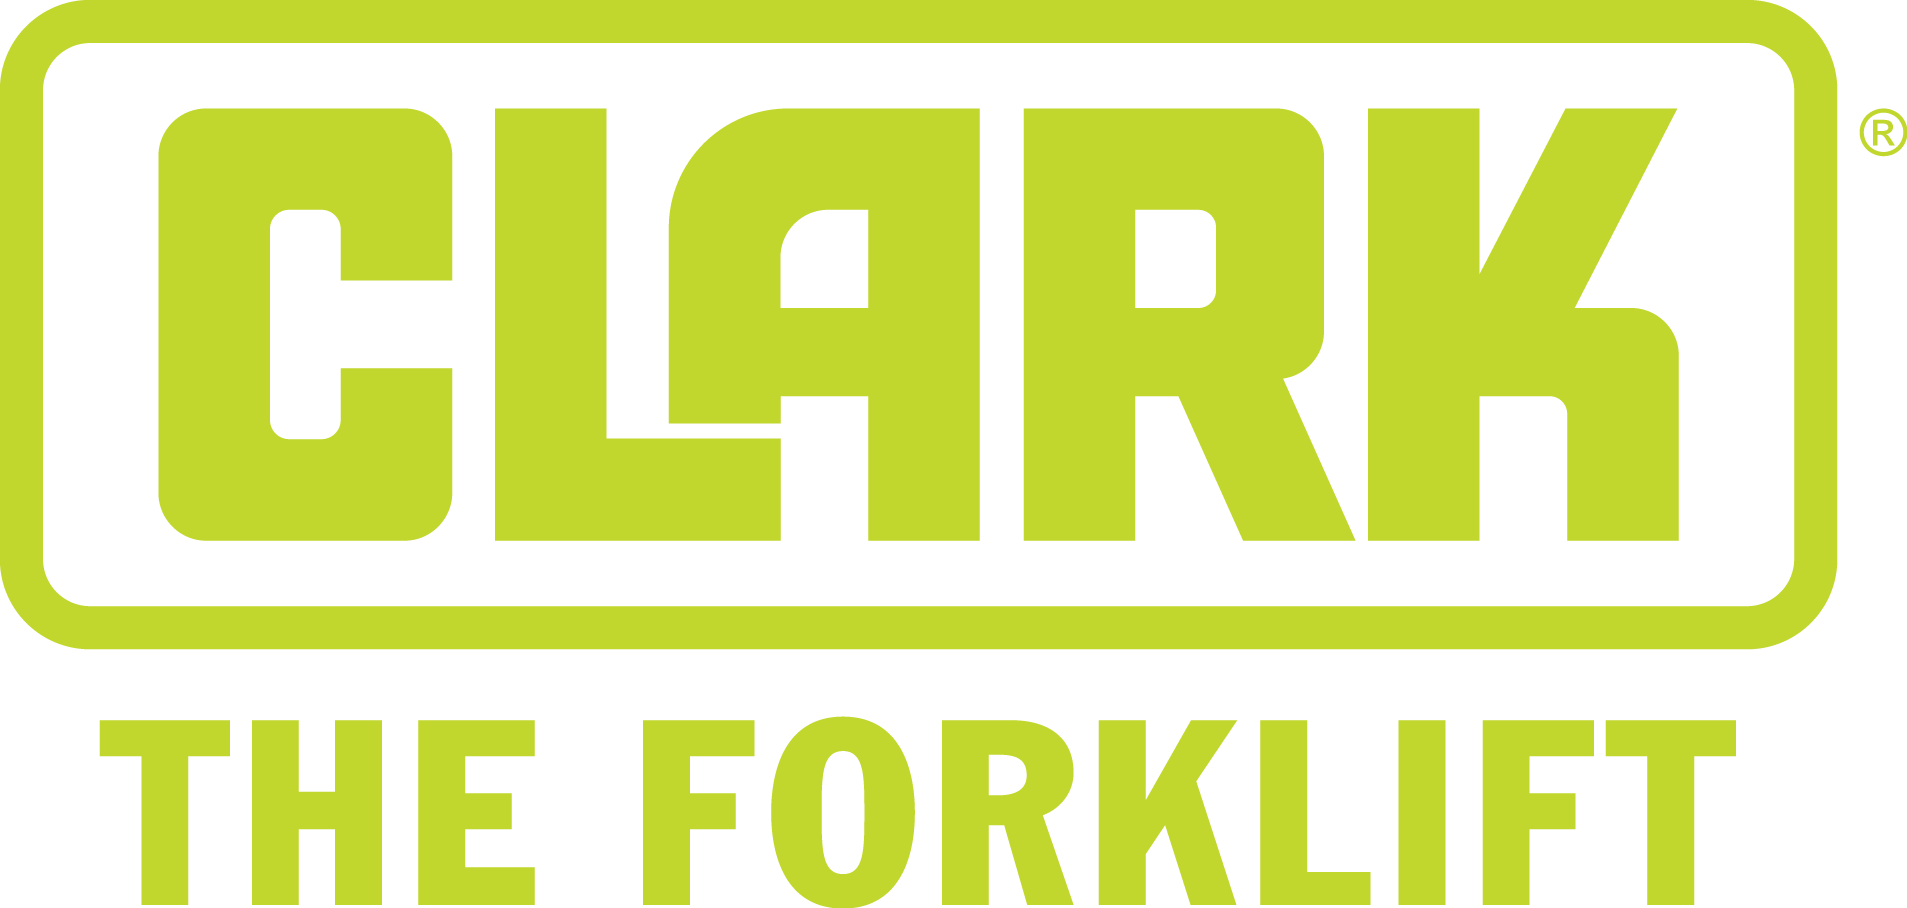 Download Clark Forklift Logo PNG Image With No Background | vlr.eng.br